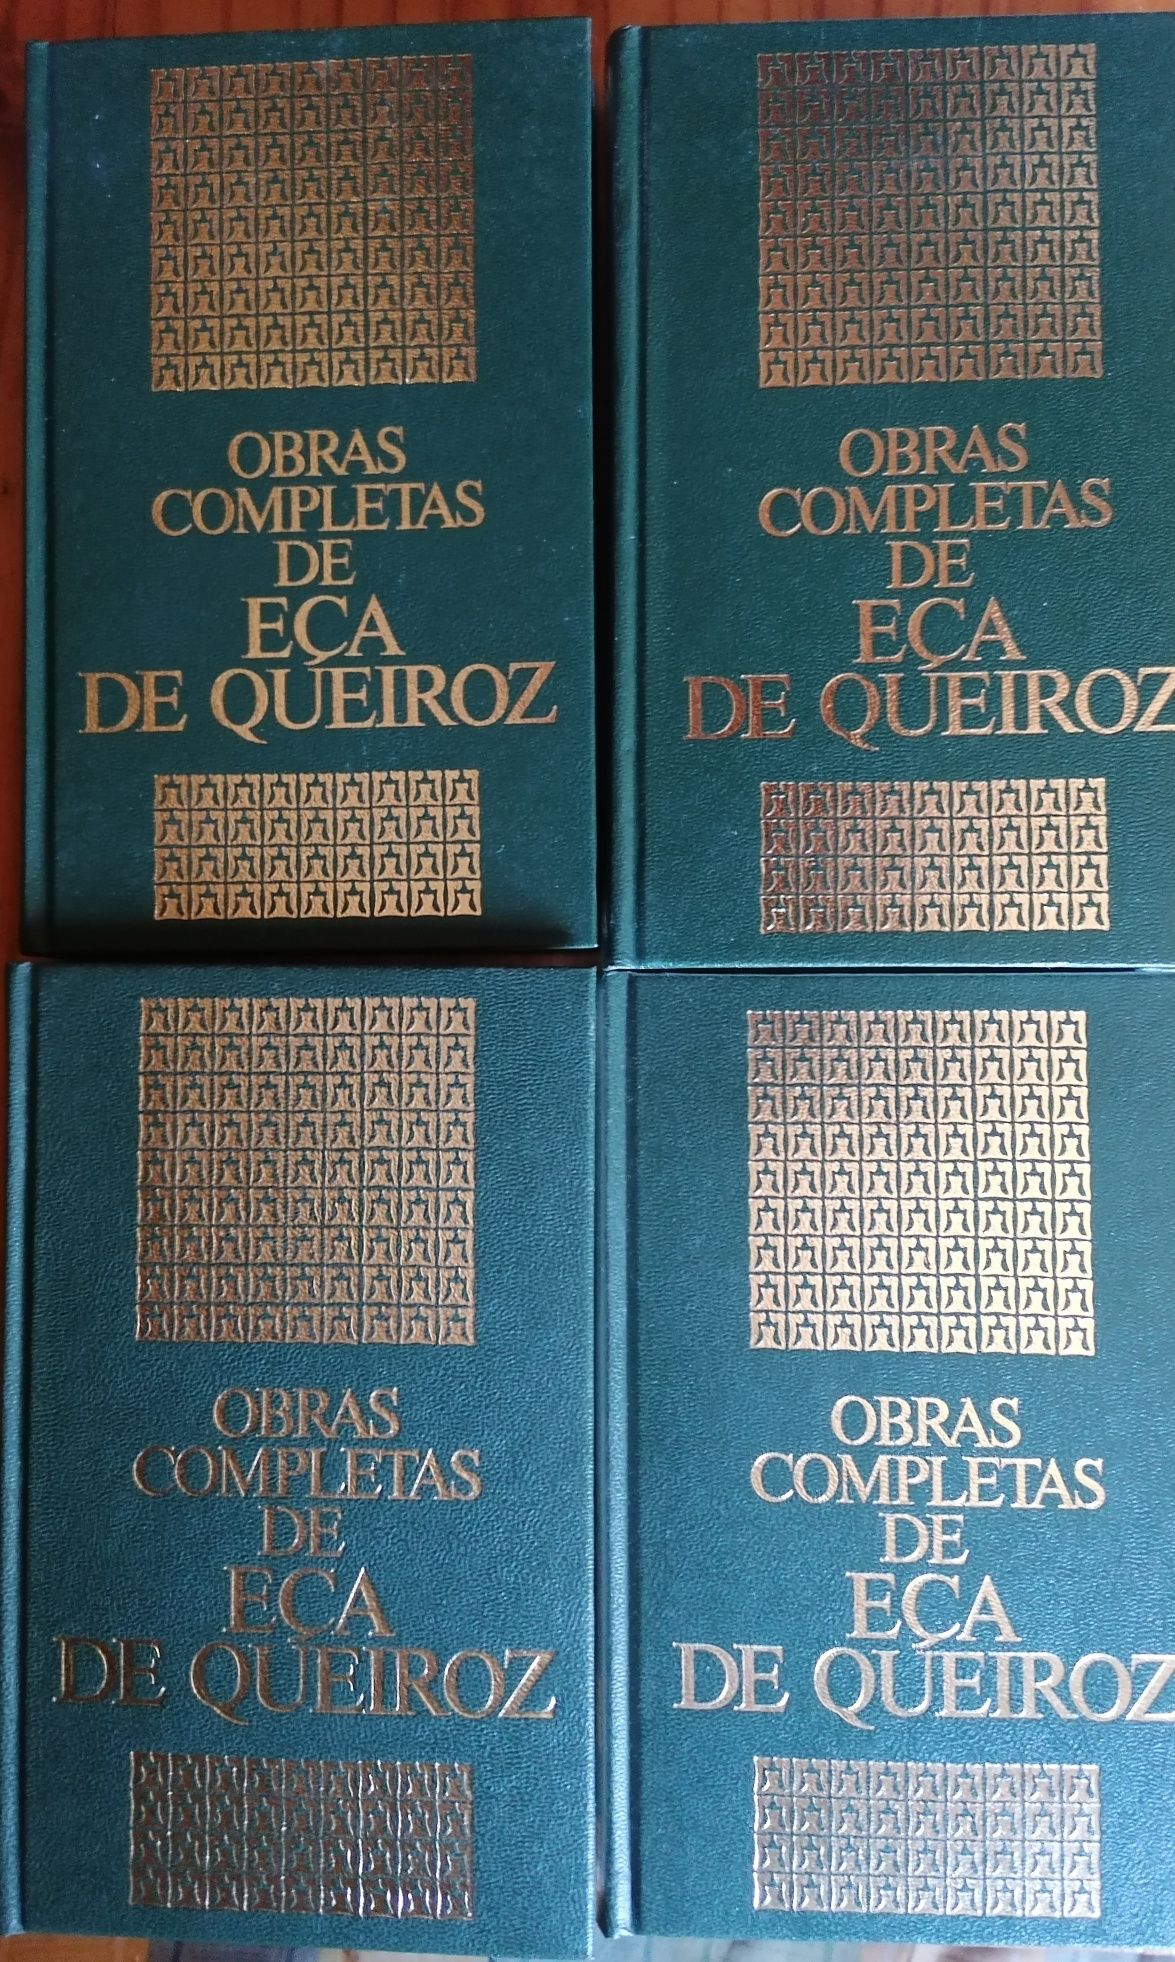 Literatura de autores clássicos portugueses